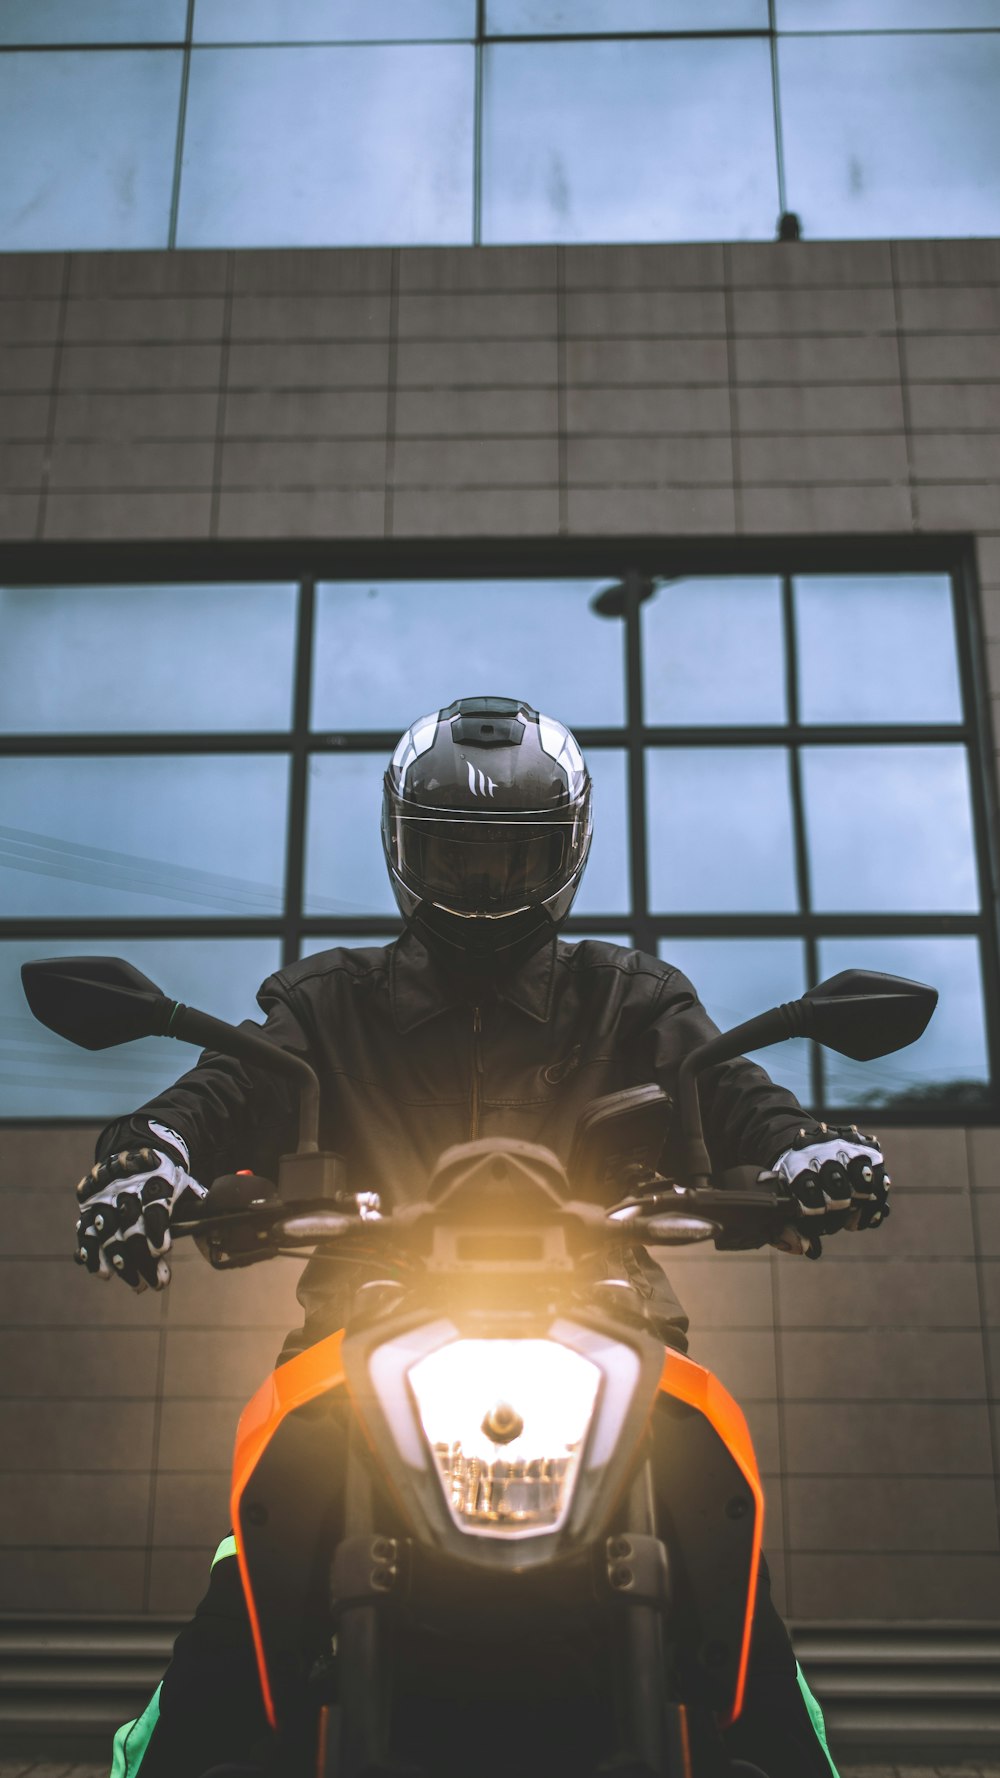 Foto Uma pessoa andando de moto em uma pista de corrida – Imagem de  Capacete grátis no Unsplash